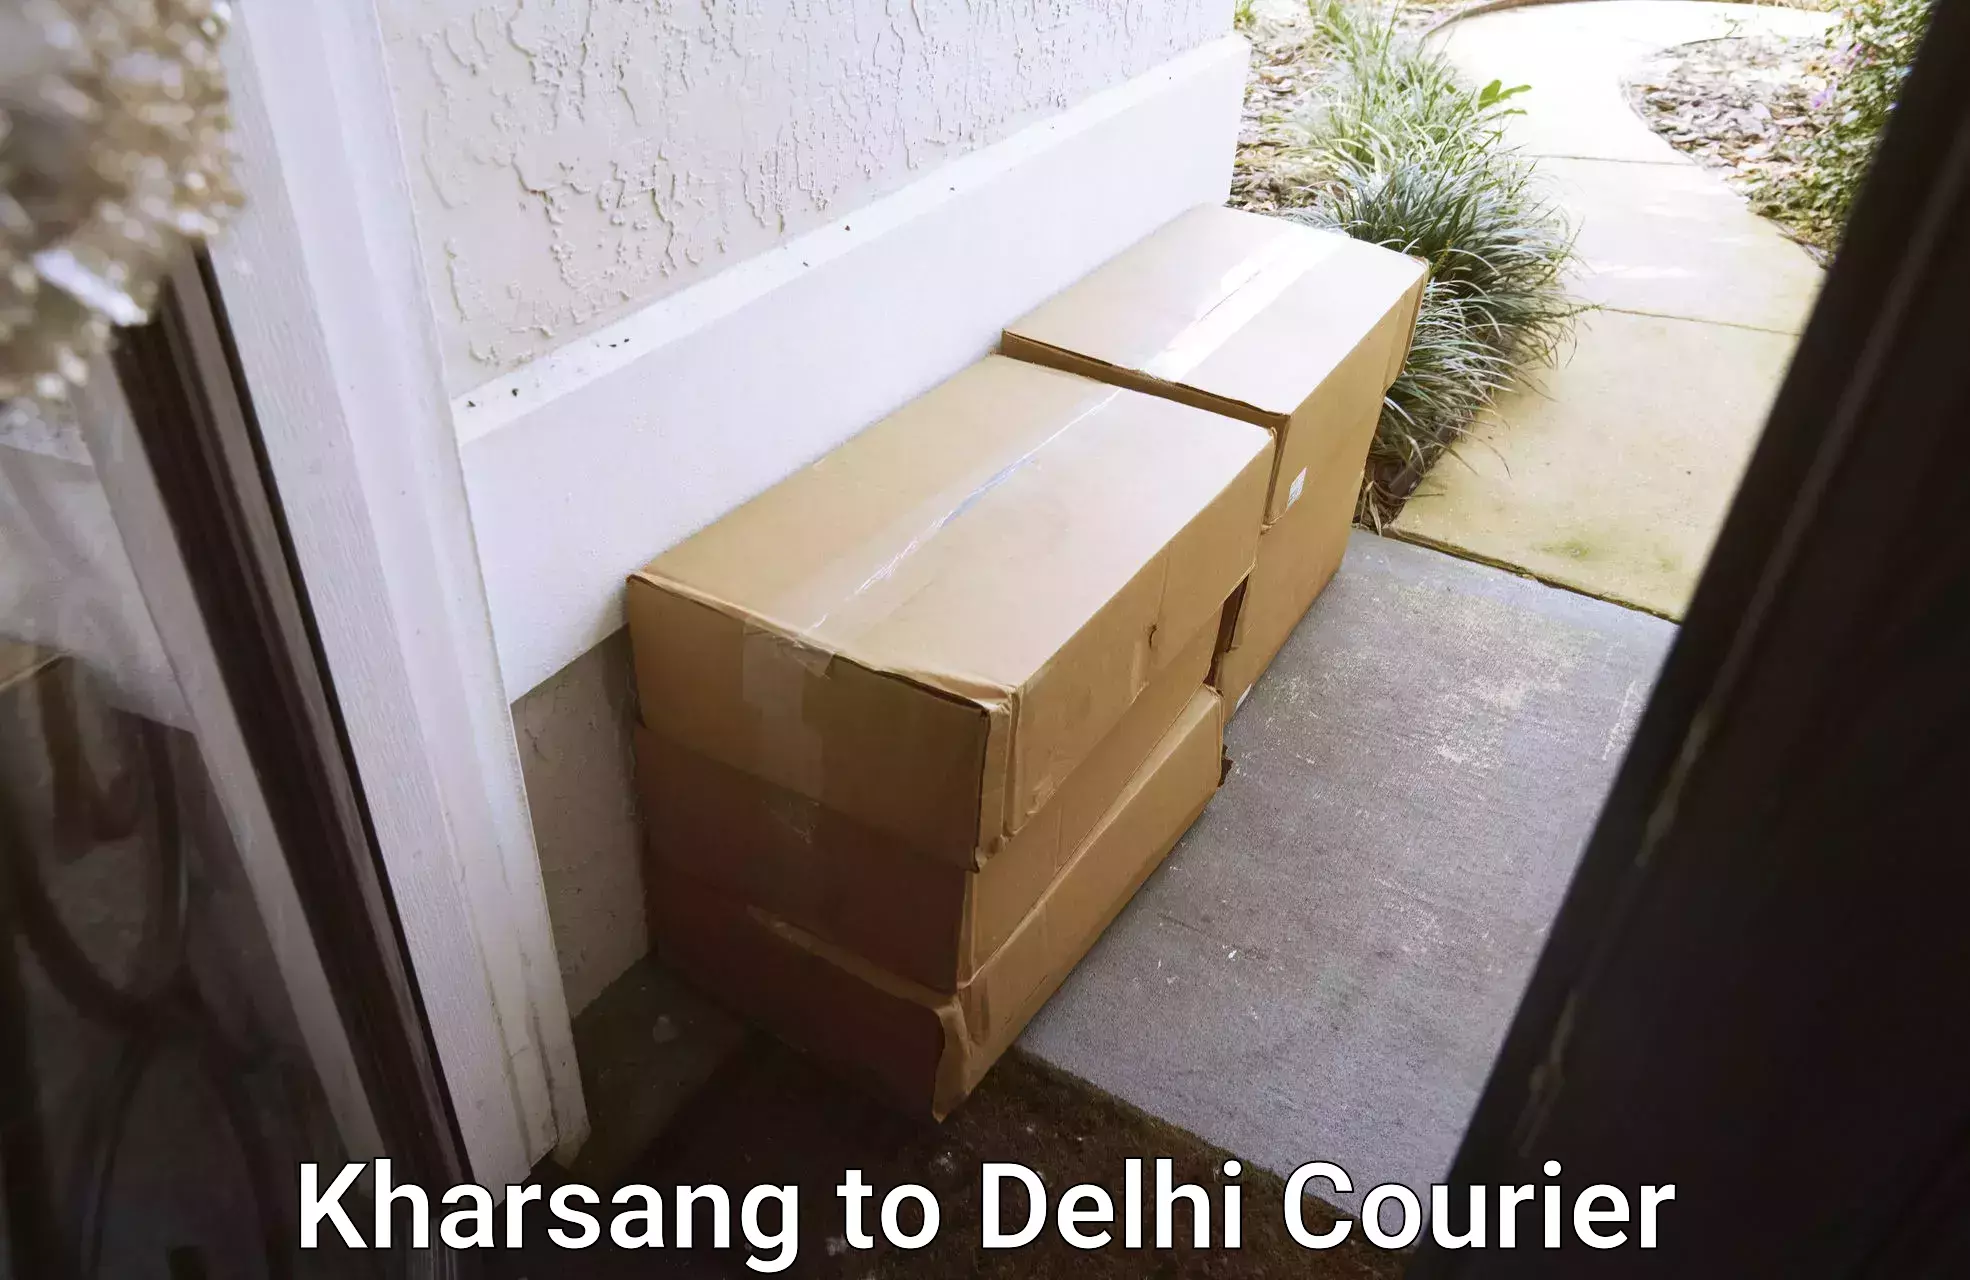 24/7 shipping services Kharsang to Delhi